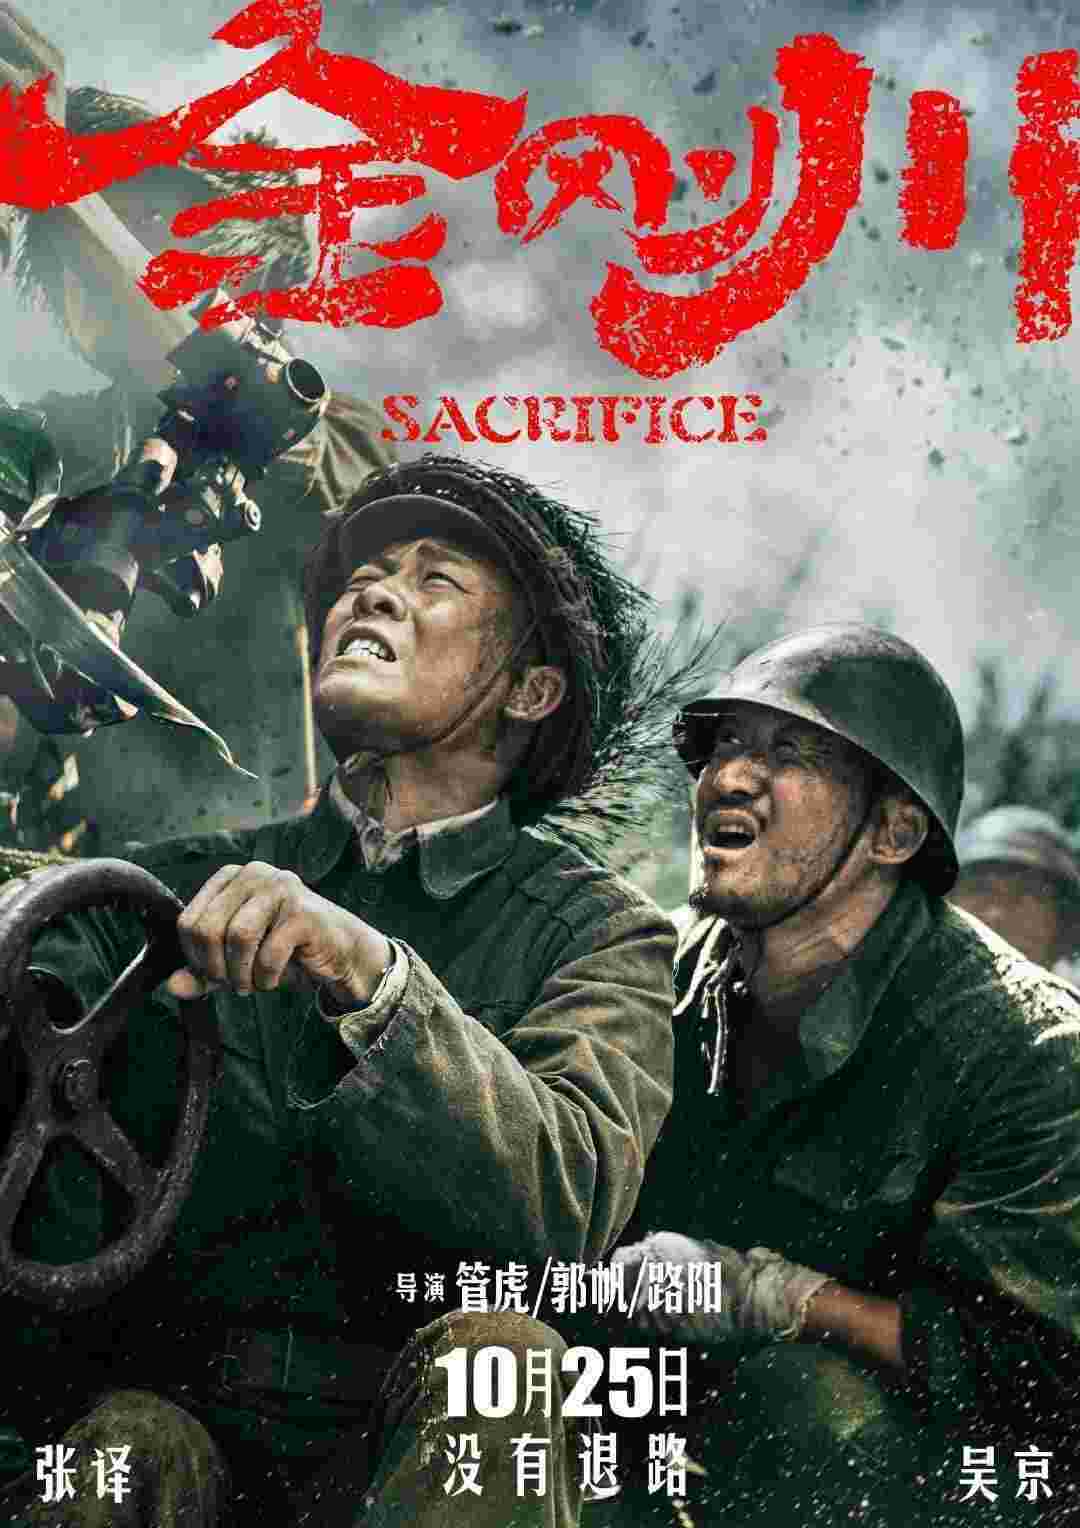 The Sacrifice (2020) Yi Zhang